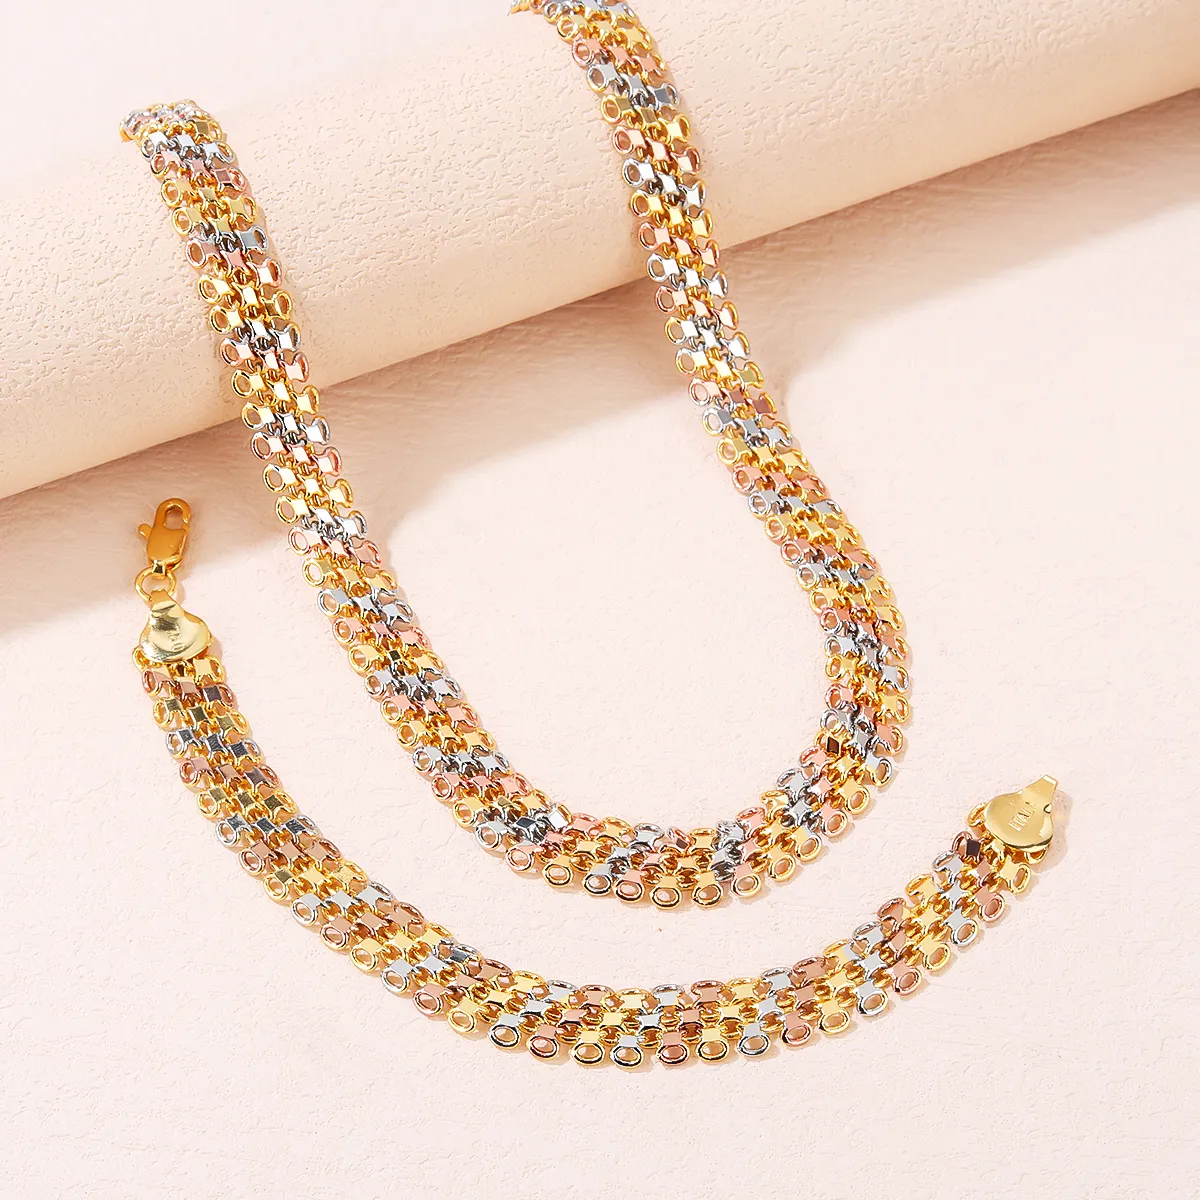 SISIYU Neues Design Luxus 3 Farben breites Design Party-Kehlring Armband Schmuck Geschenk Halskette Sets für Damen